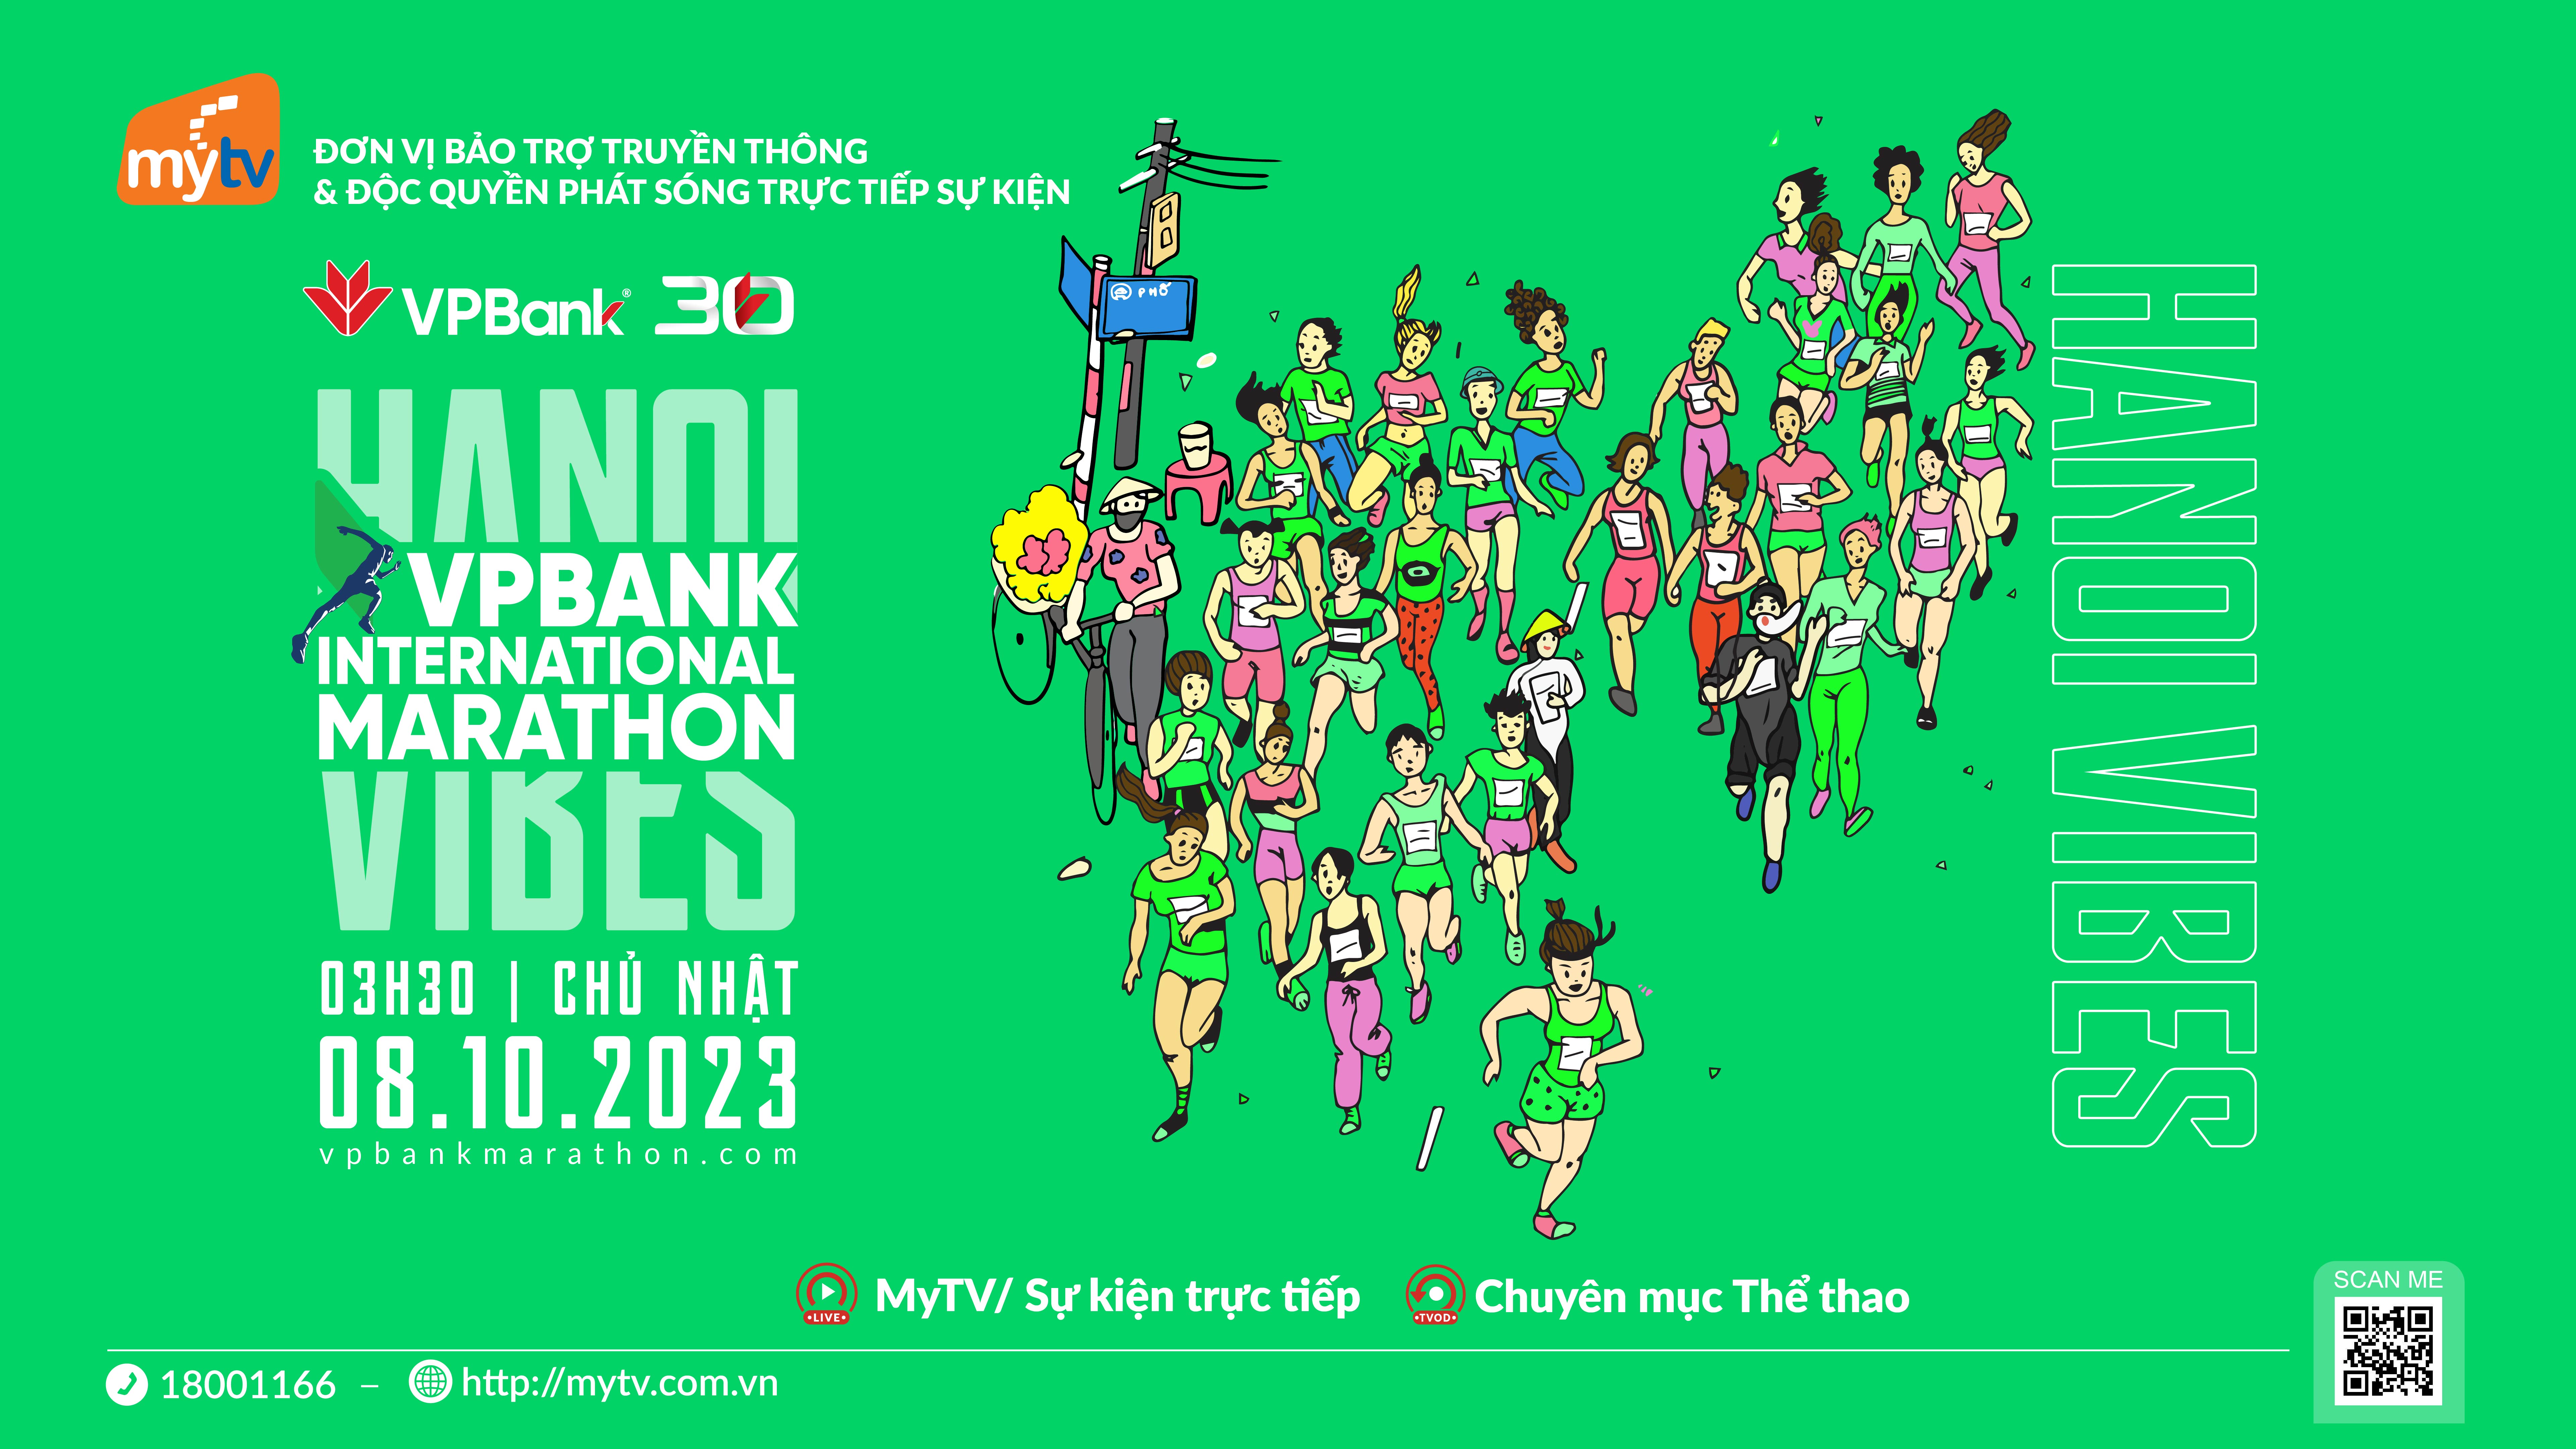 MyTV bảo trợ truyền thông & độc quyền phát trực tiếp giải Marathon Quốc tế Hà Nội VPBank 2023